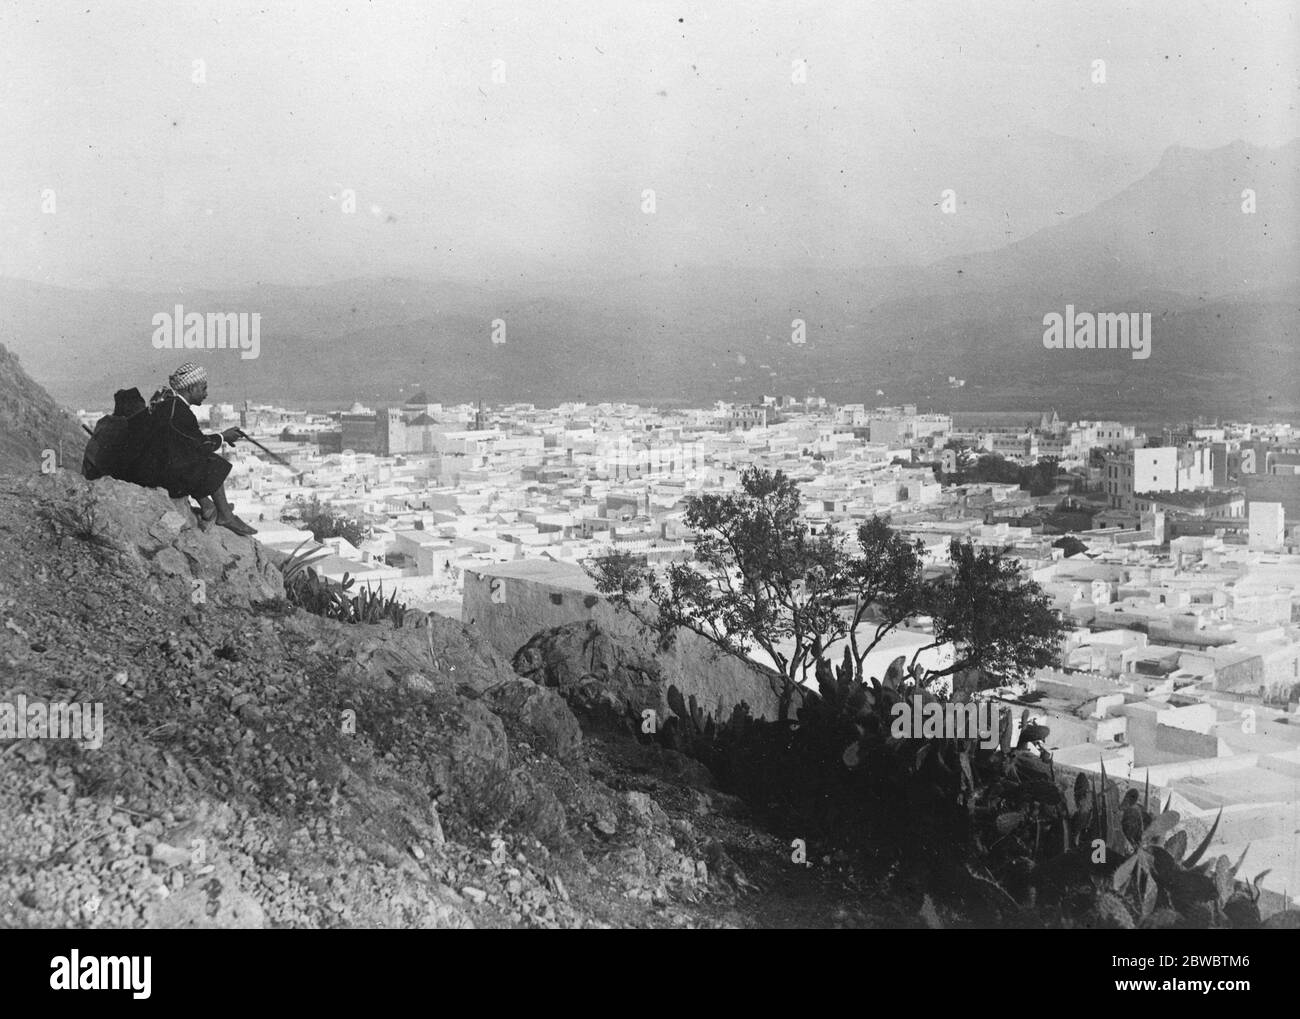 Beansprucht von Abd el Krim. Tetuan. Die historische und typische maurische Stadt, zu der es heißt, Abd el Krim behauptet, als Bedingung des Friedens. September 1925 Stockfoto